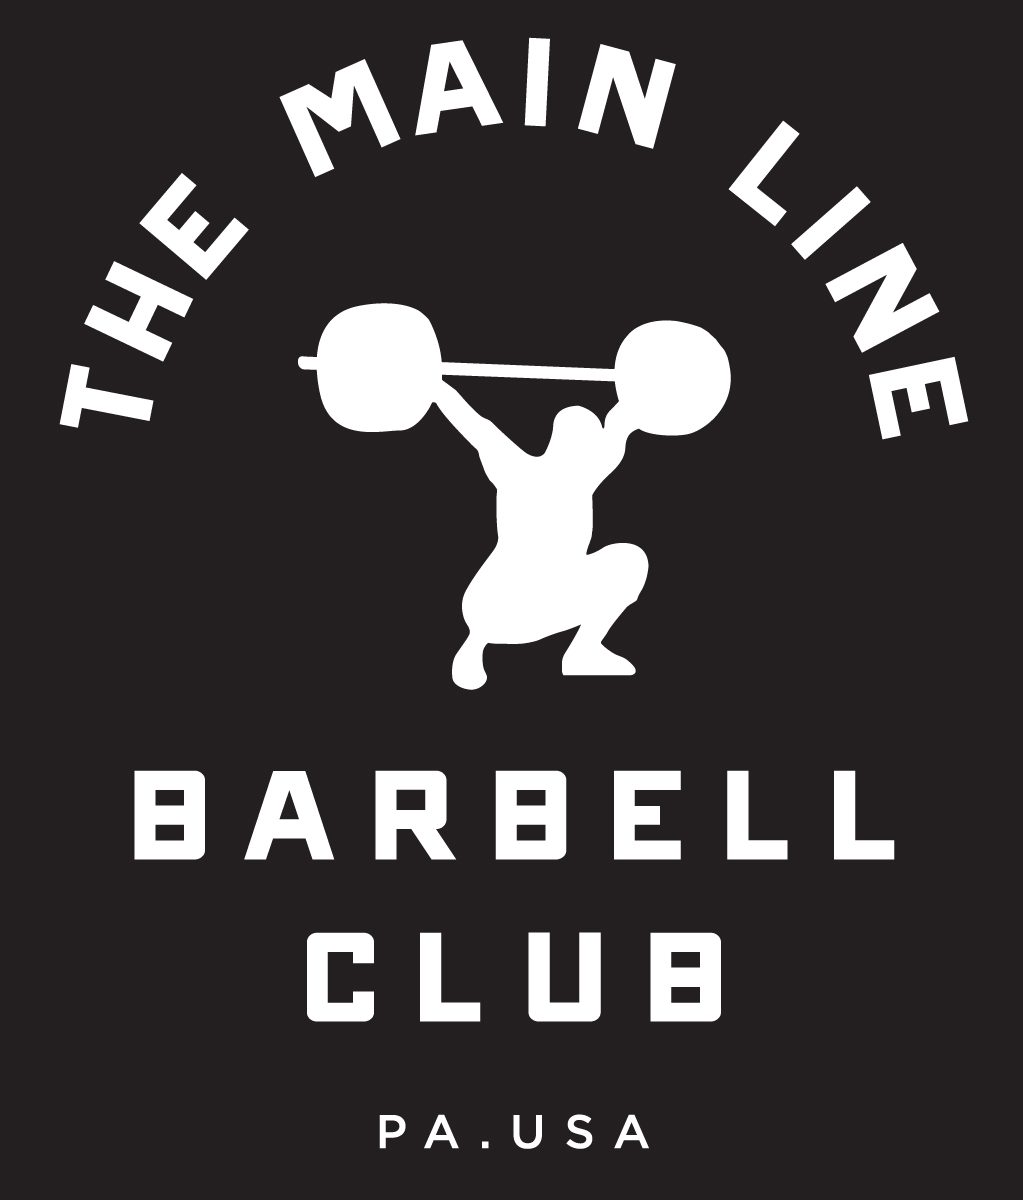 Week of 10.31.16 Barbell Club